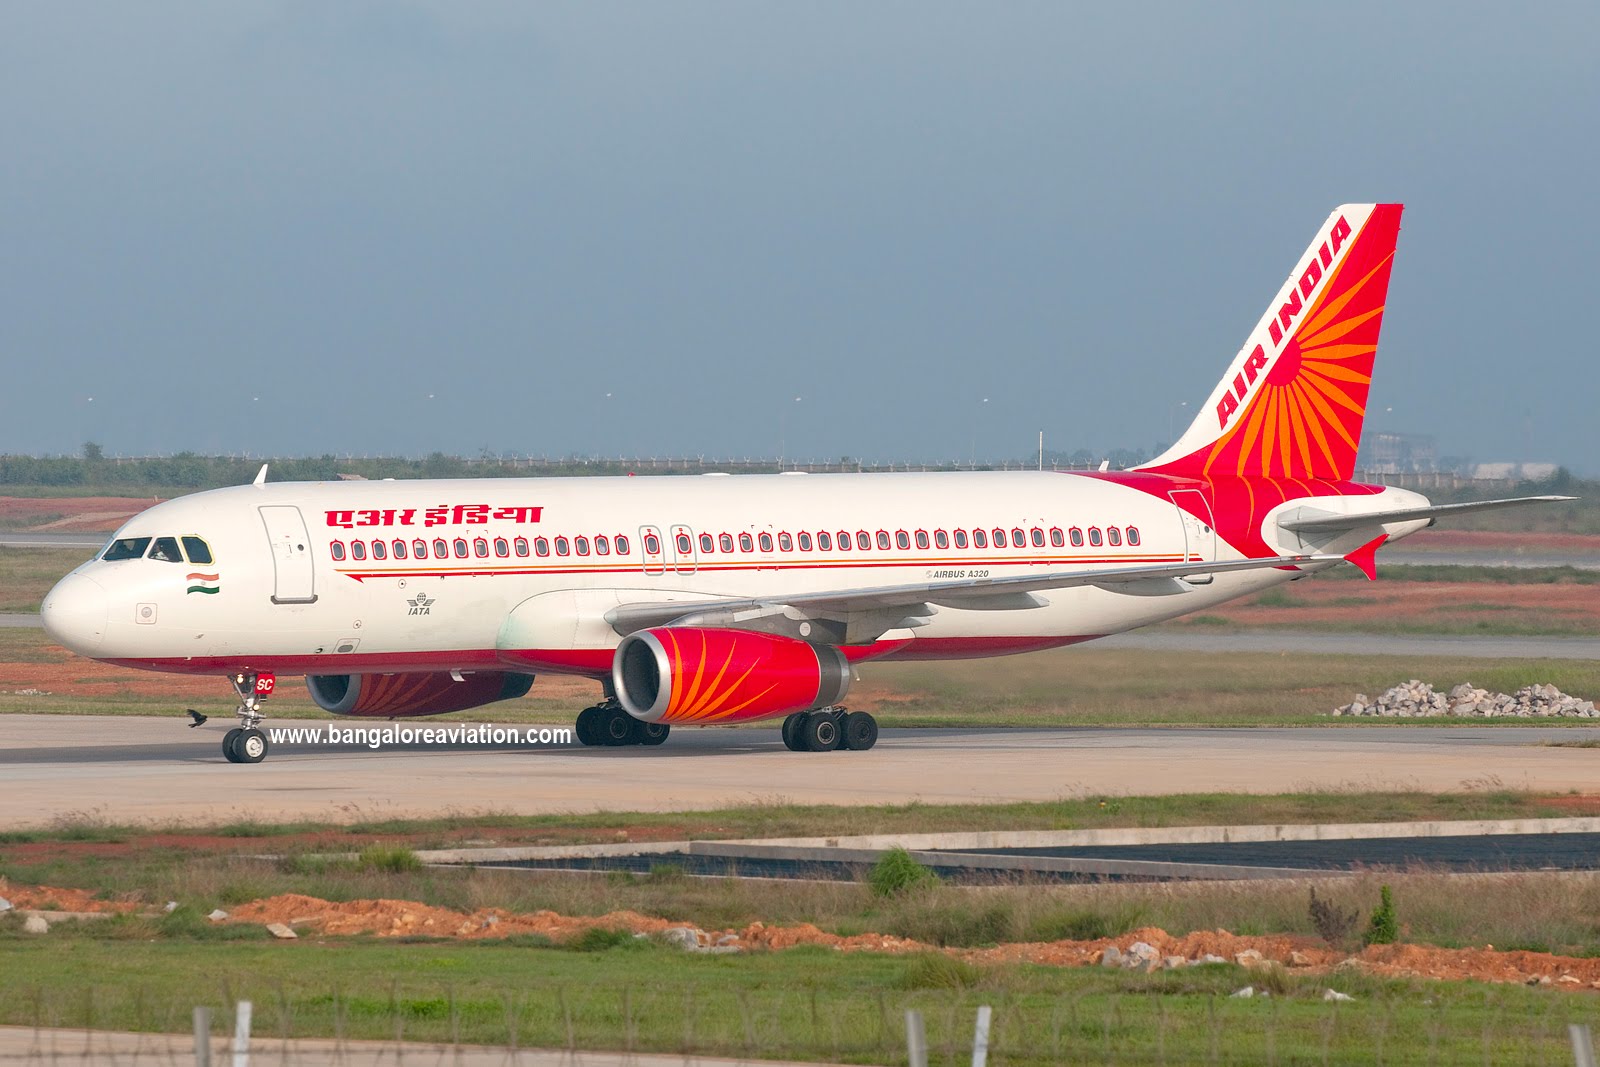 السلطات الهندية تفتش 10 طائرات بعد تهديد